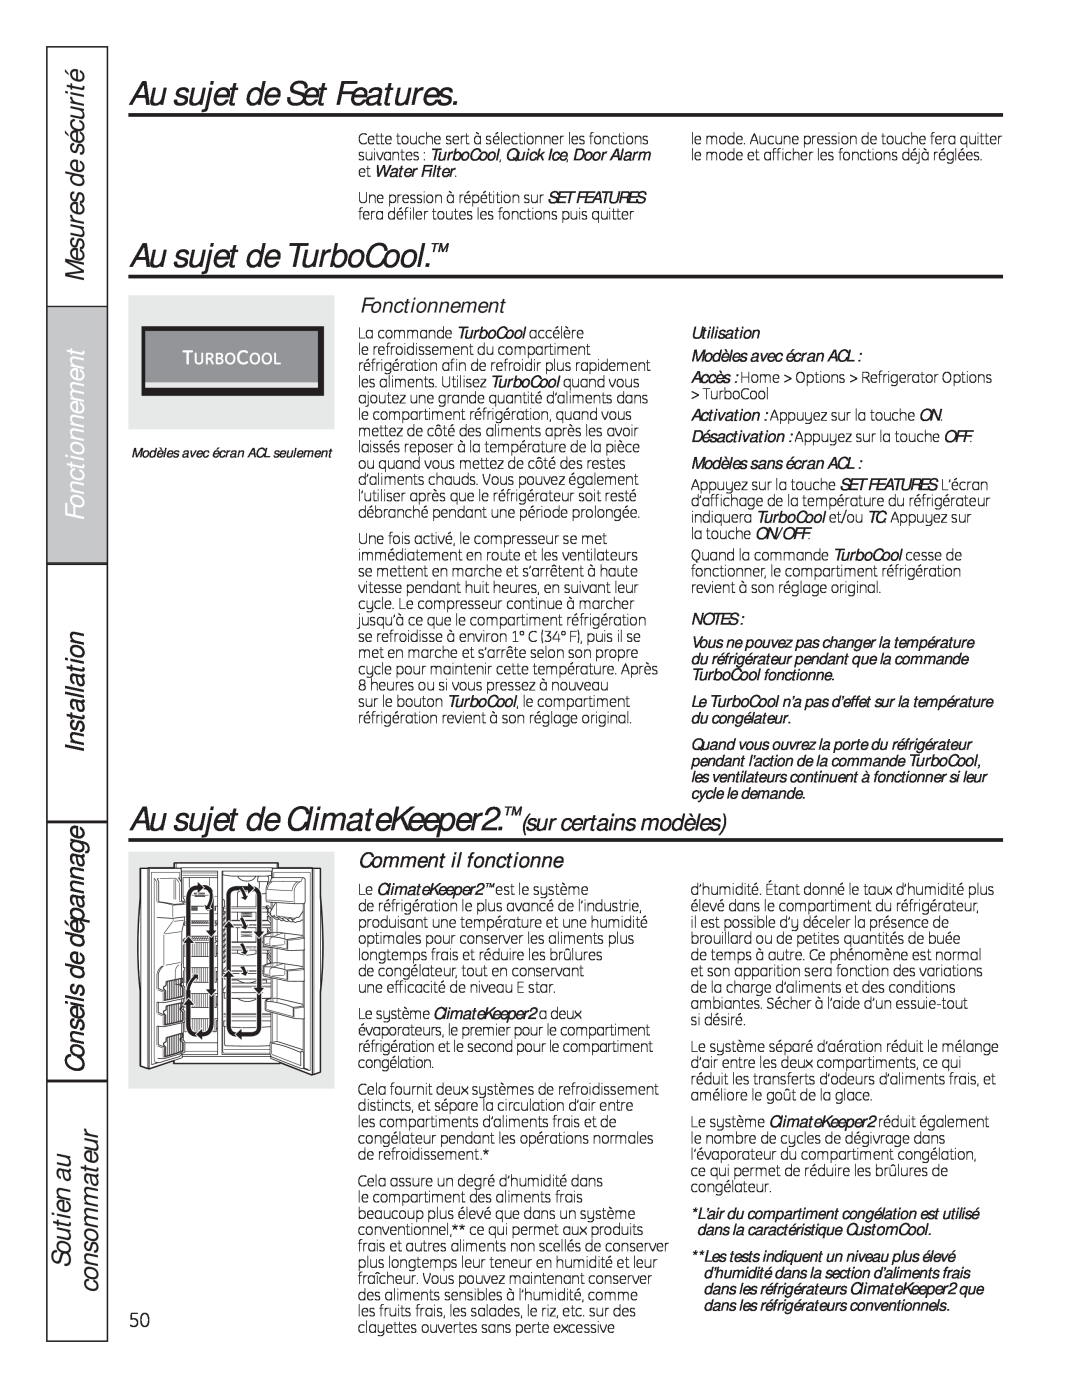 GE 200D8074P050 Au sujet de Set Features, Au sujet de TurboCool, Au sujet de ClimateKeeper2. sur certains modèles 